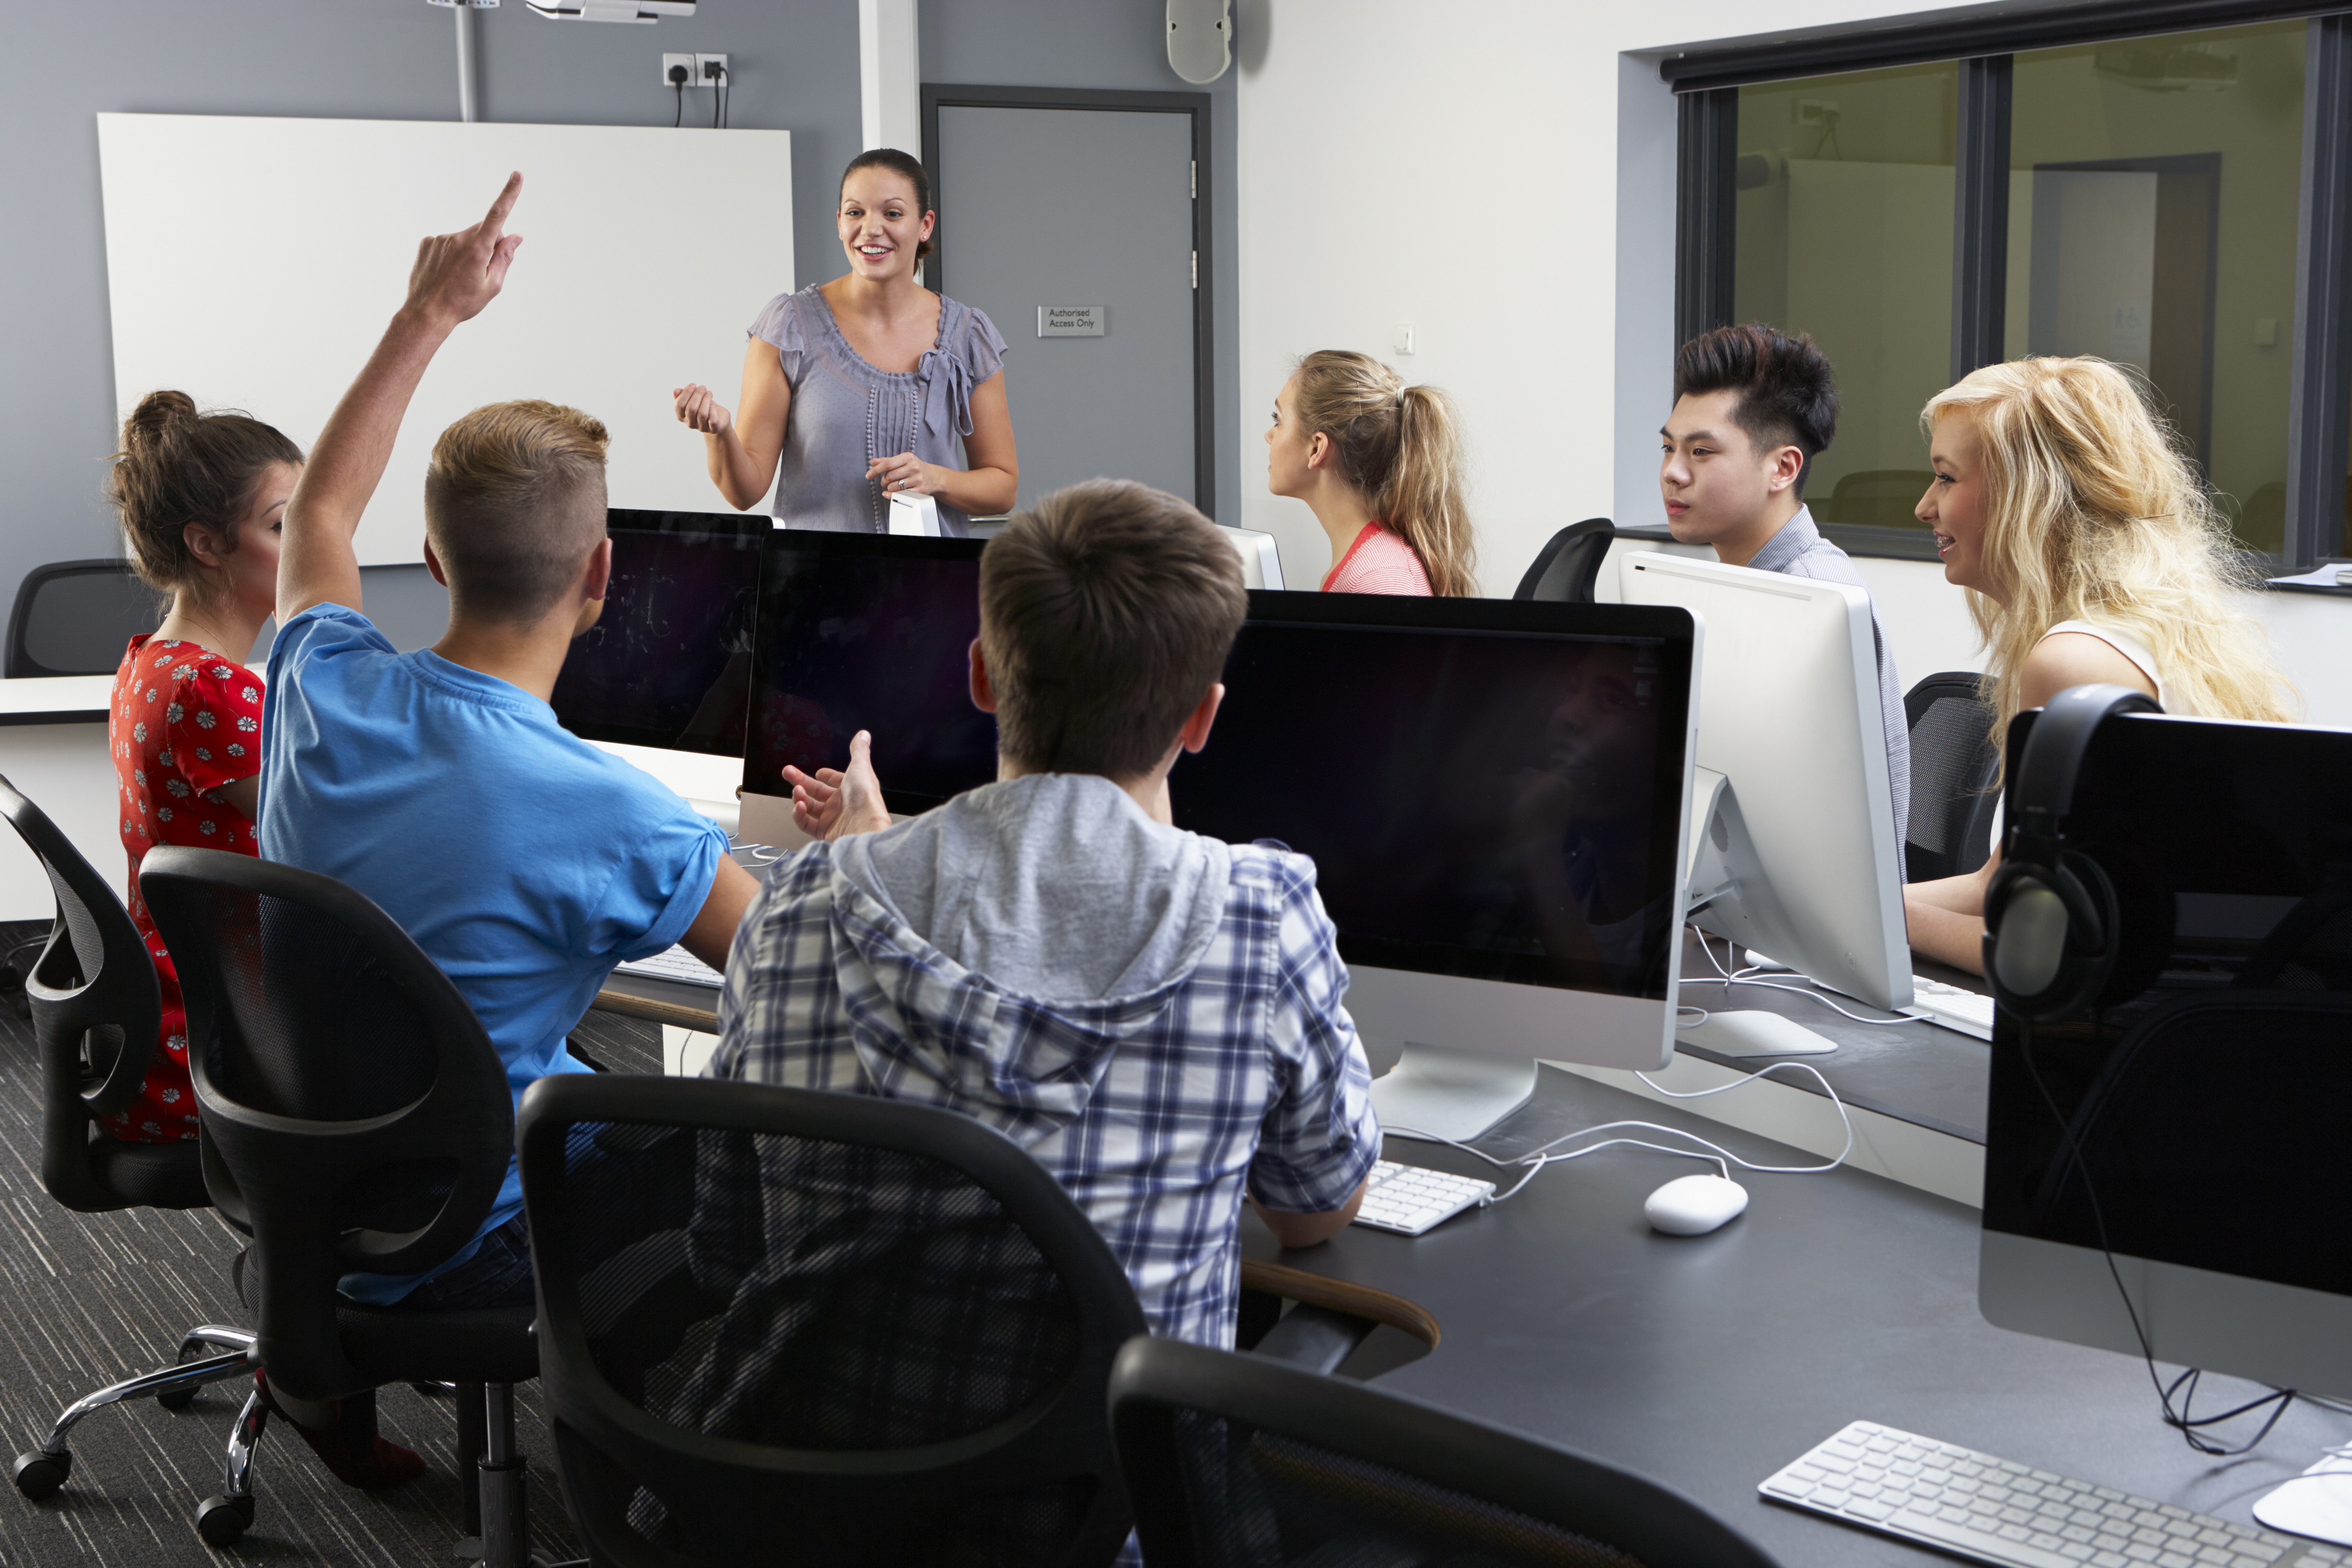 A imagem mostra uma professora em sala de aula com alunos.